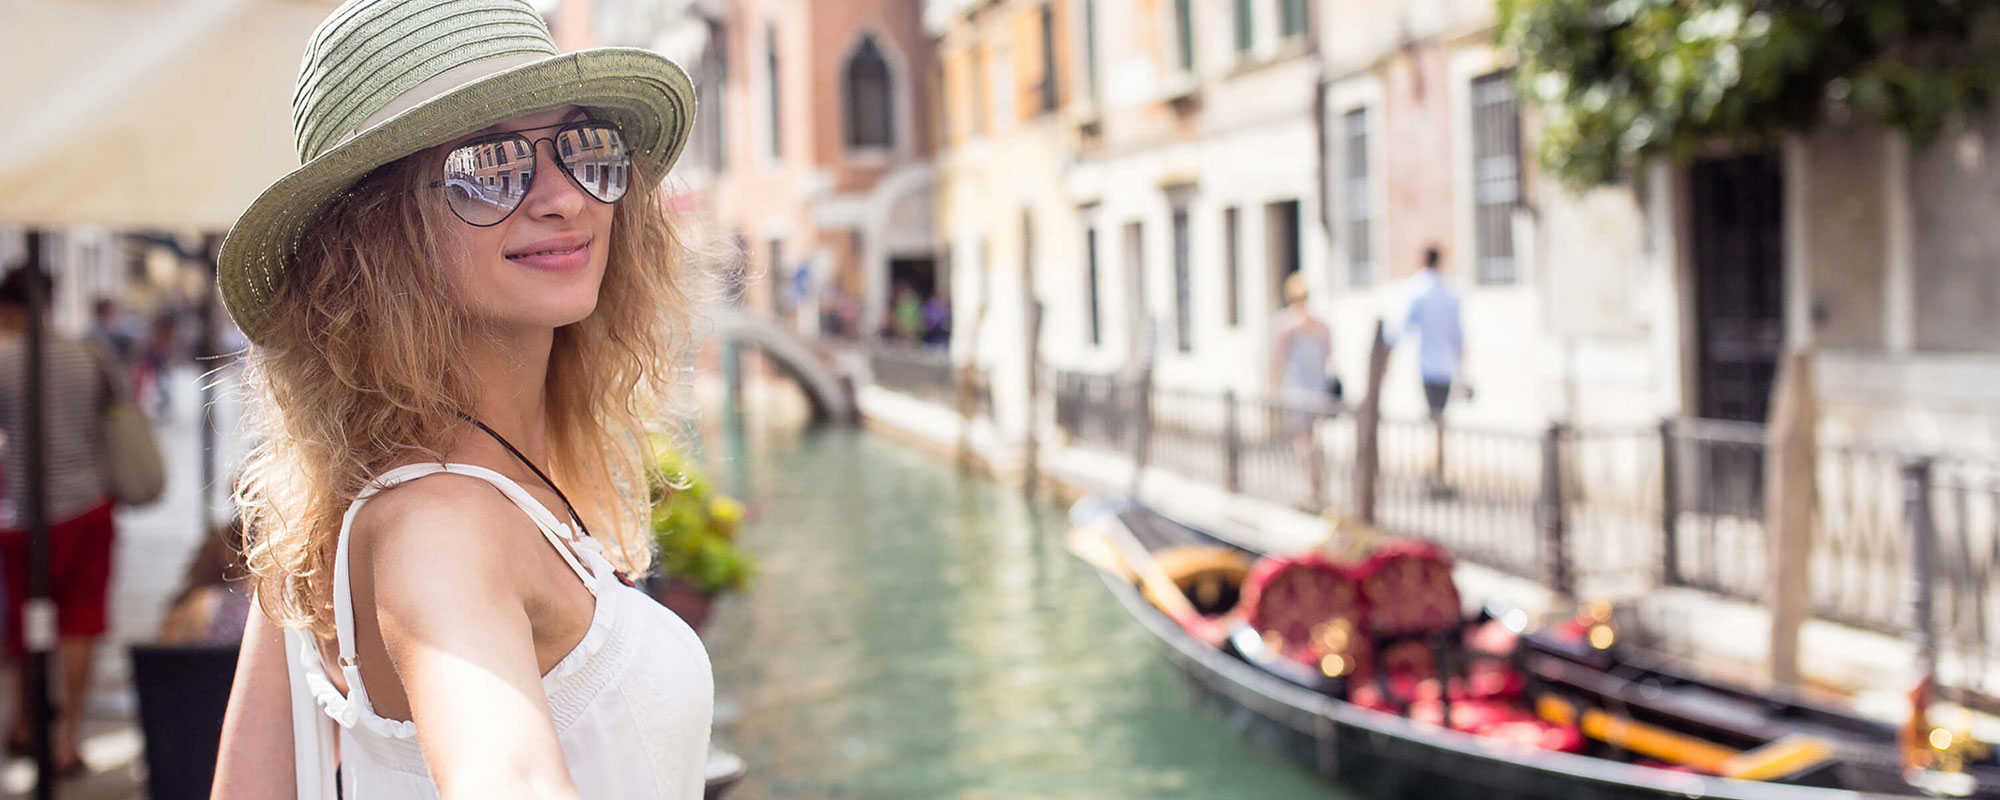 Chica mirando a cámara al lado de una góndola en Venecia.